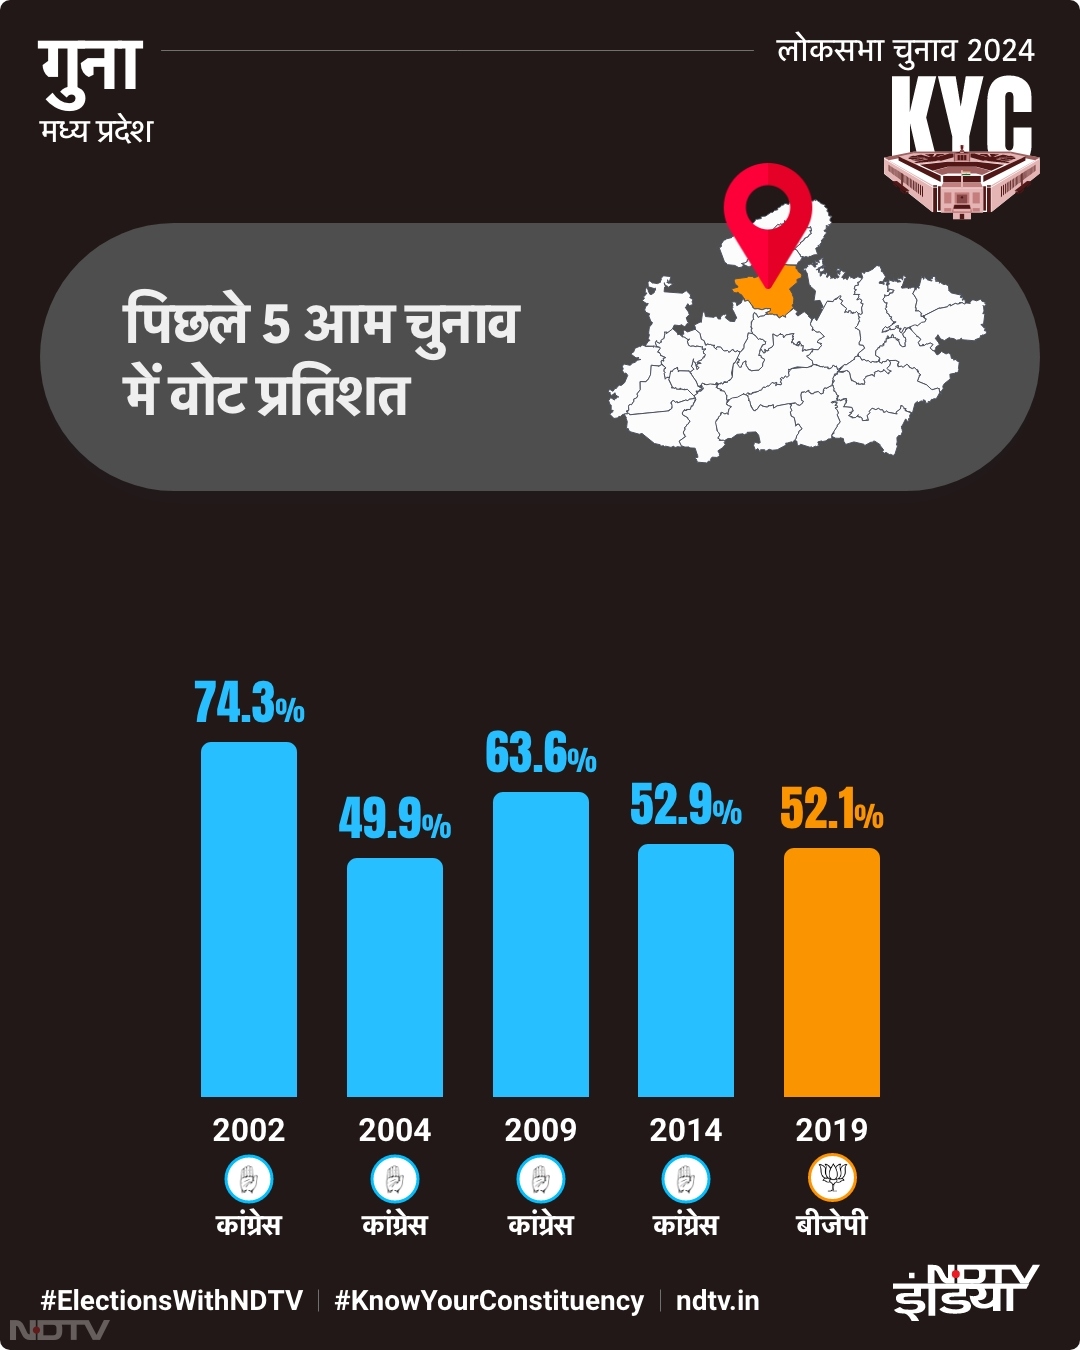 गुना में पिछले 5 आम चुनाव में वोट प्रतिशत का विवरण